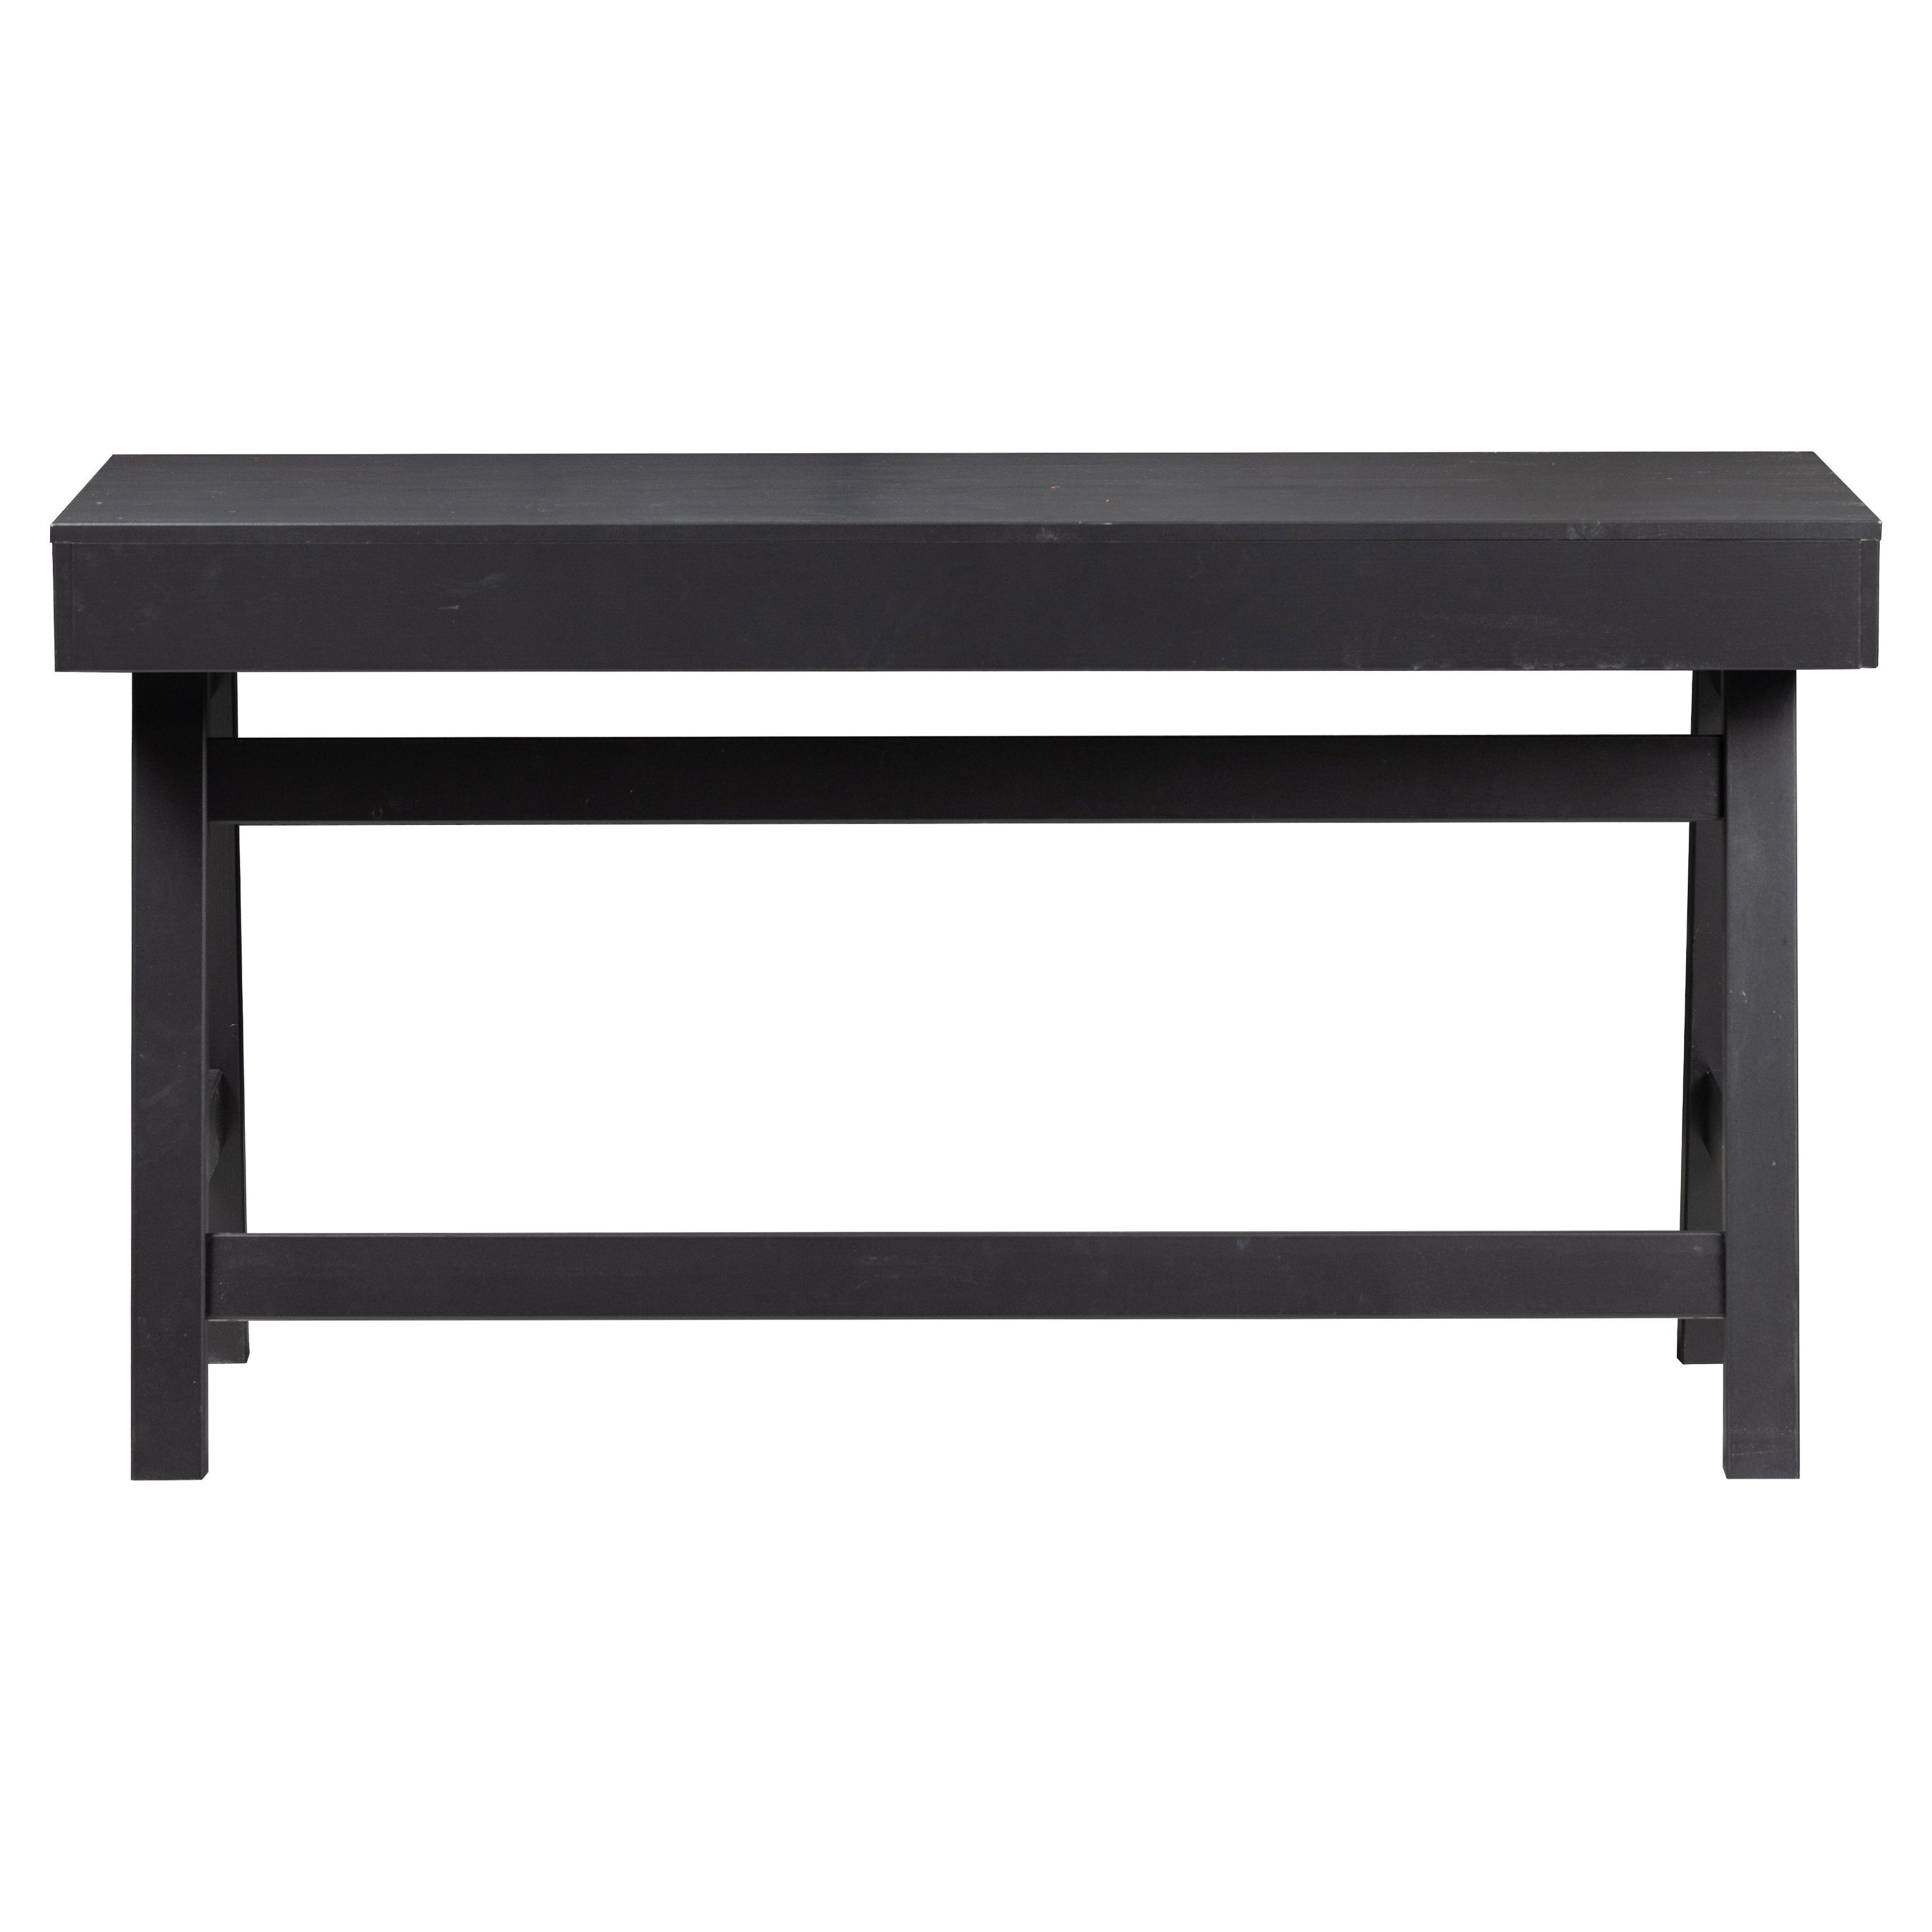 Rošomasis stalas BENSON, juoda spalva